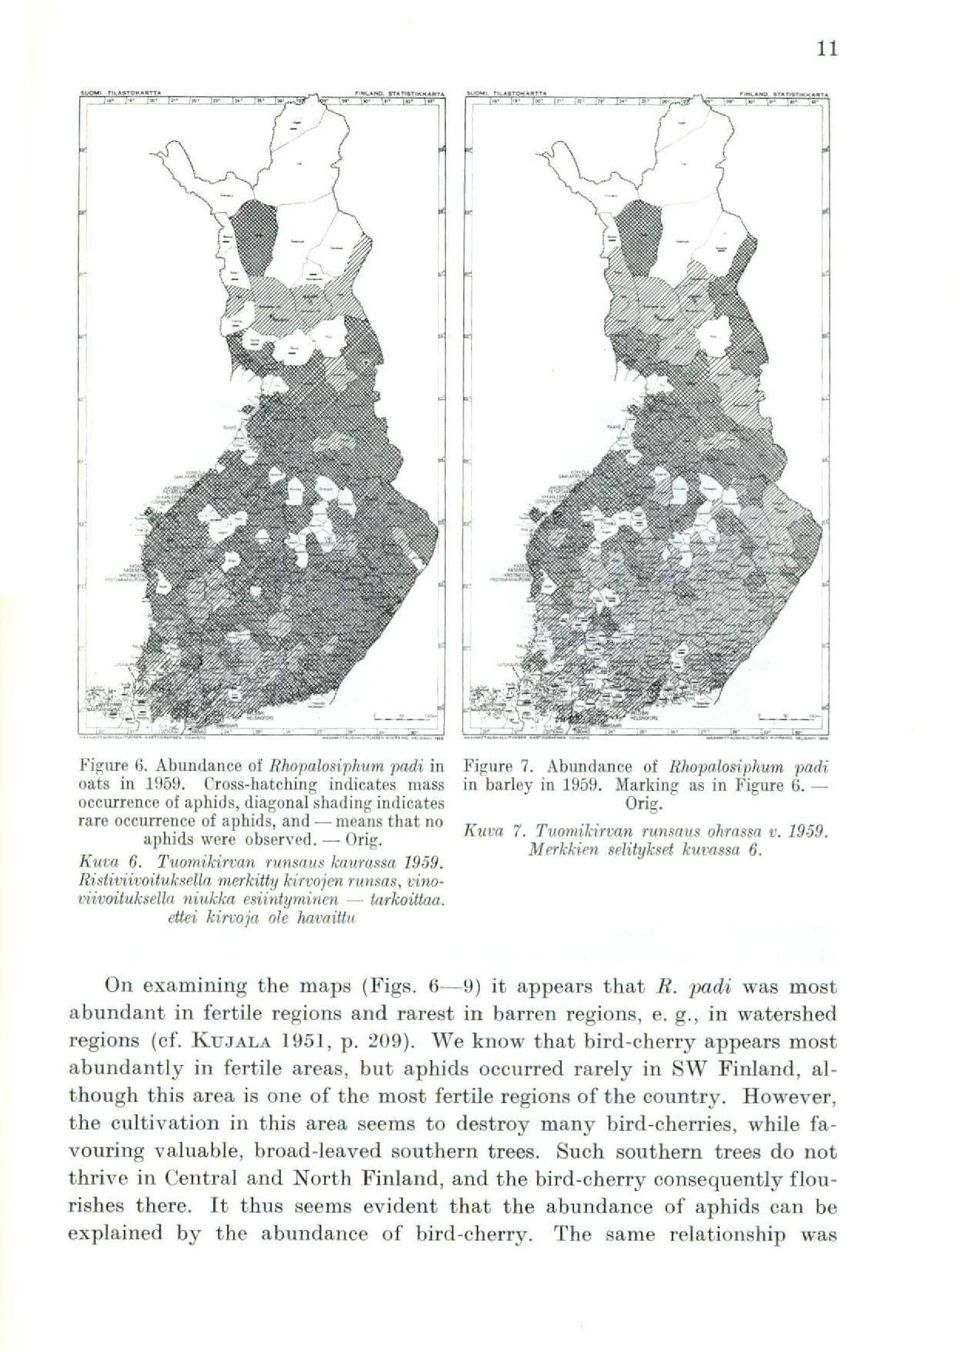 Ristiviivoituksella merkitty kirvojen runsas, vinoviivoitukselki niukka esiintyminen tarkoittaa. ettei kirvoja ole havaittu Figure 7. Abundance of Rhopalosiphum padi in barley in 1959.